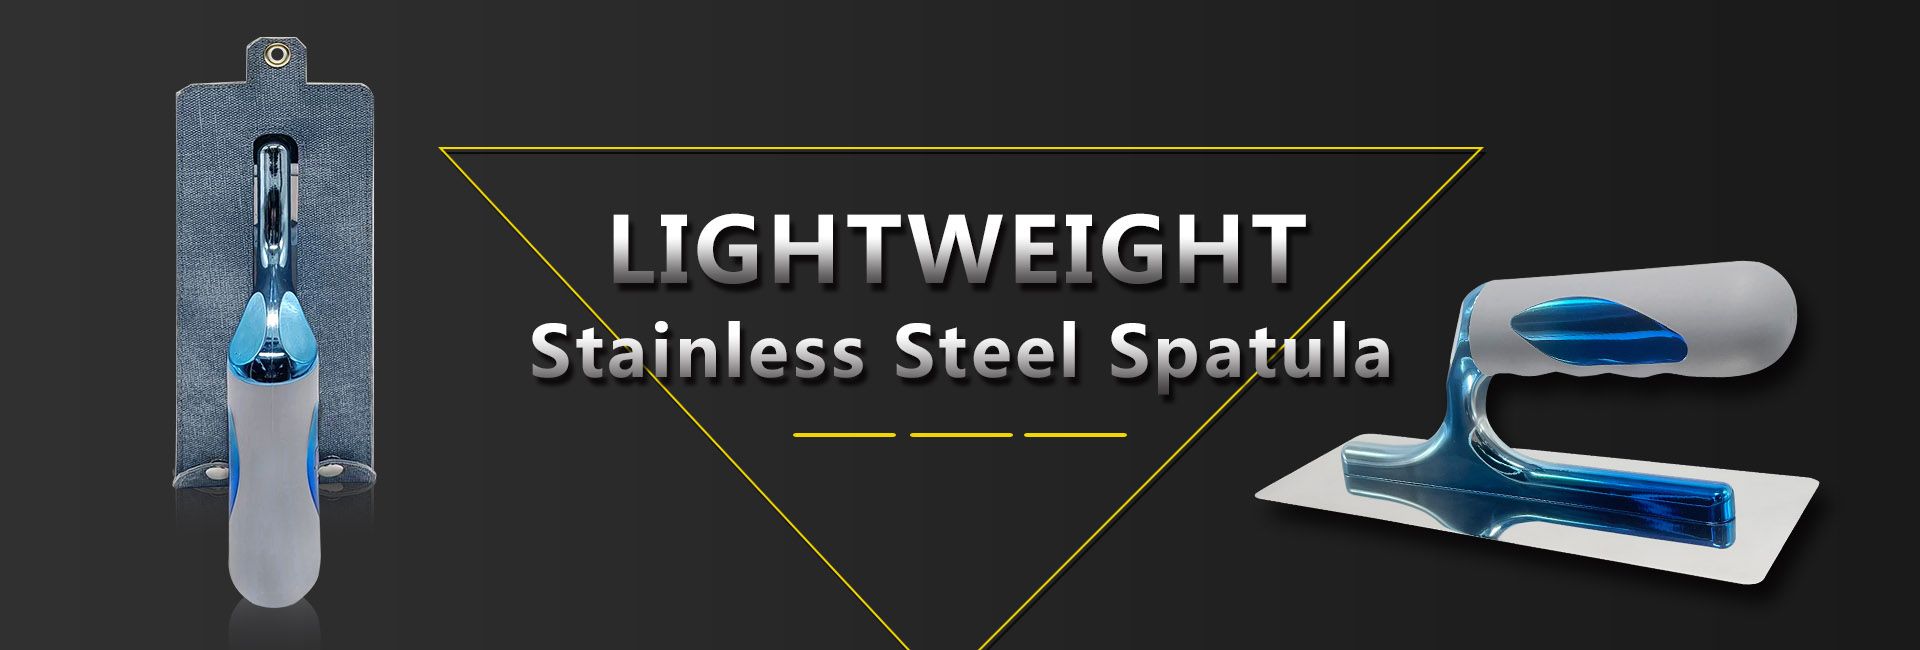 stainless steel trowel